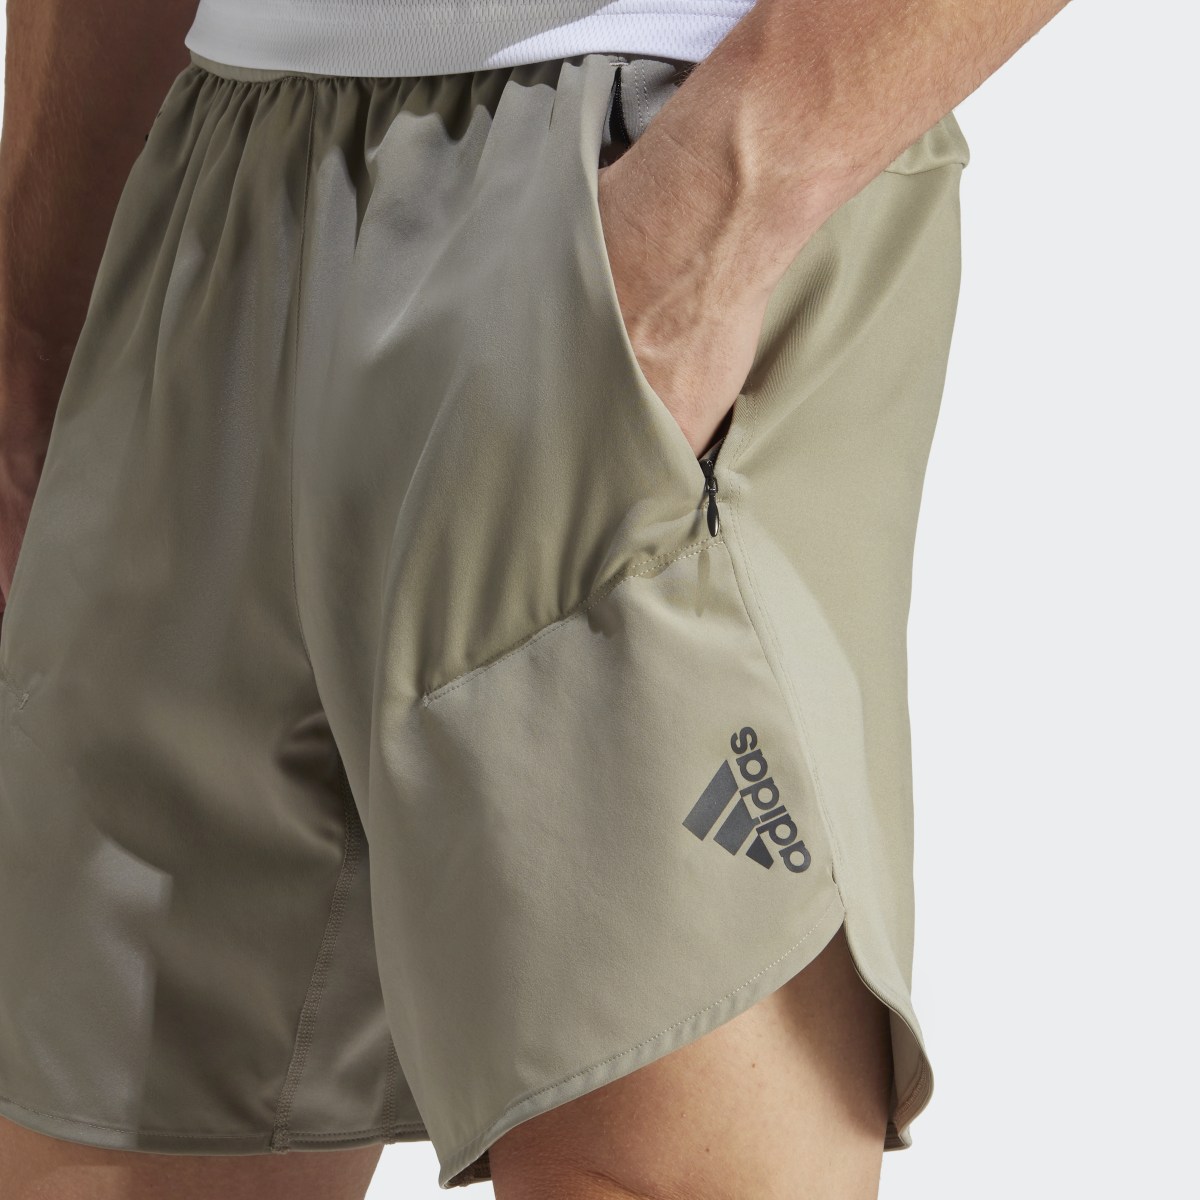 Adidas Shorts Designed for Training. 6